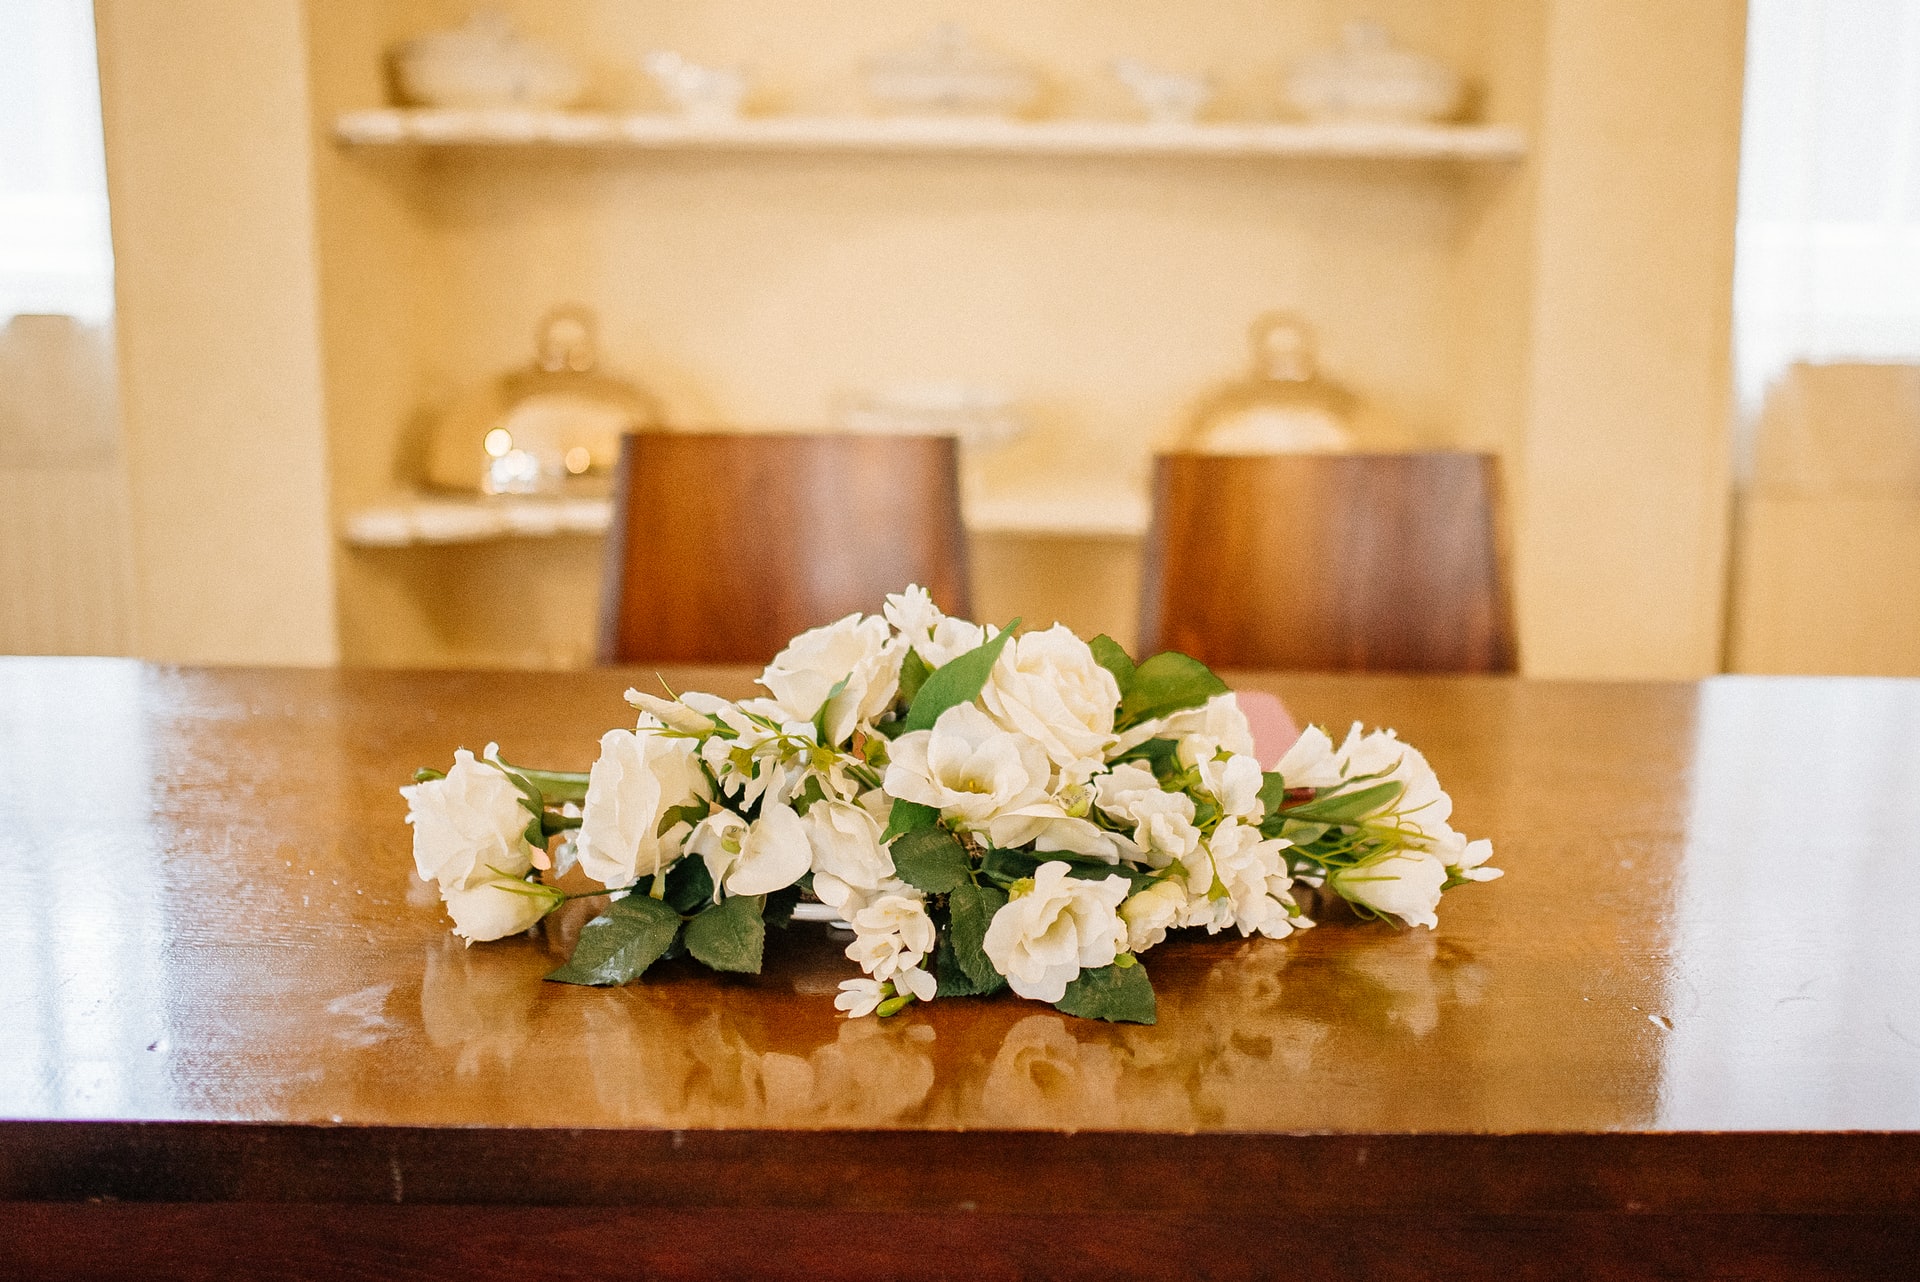 El significado de las flores para un funeral